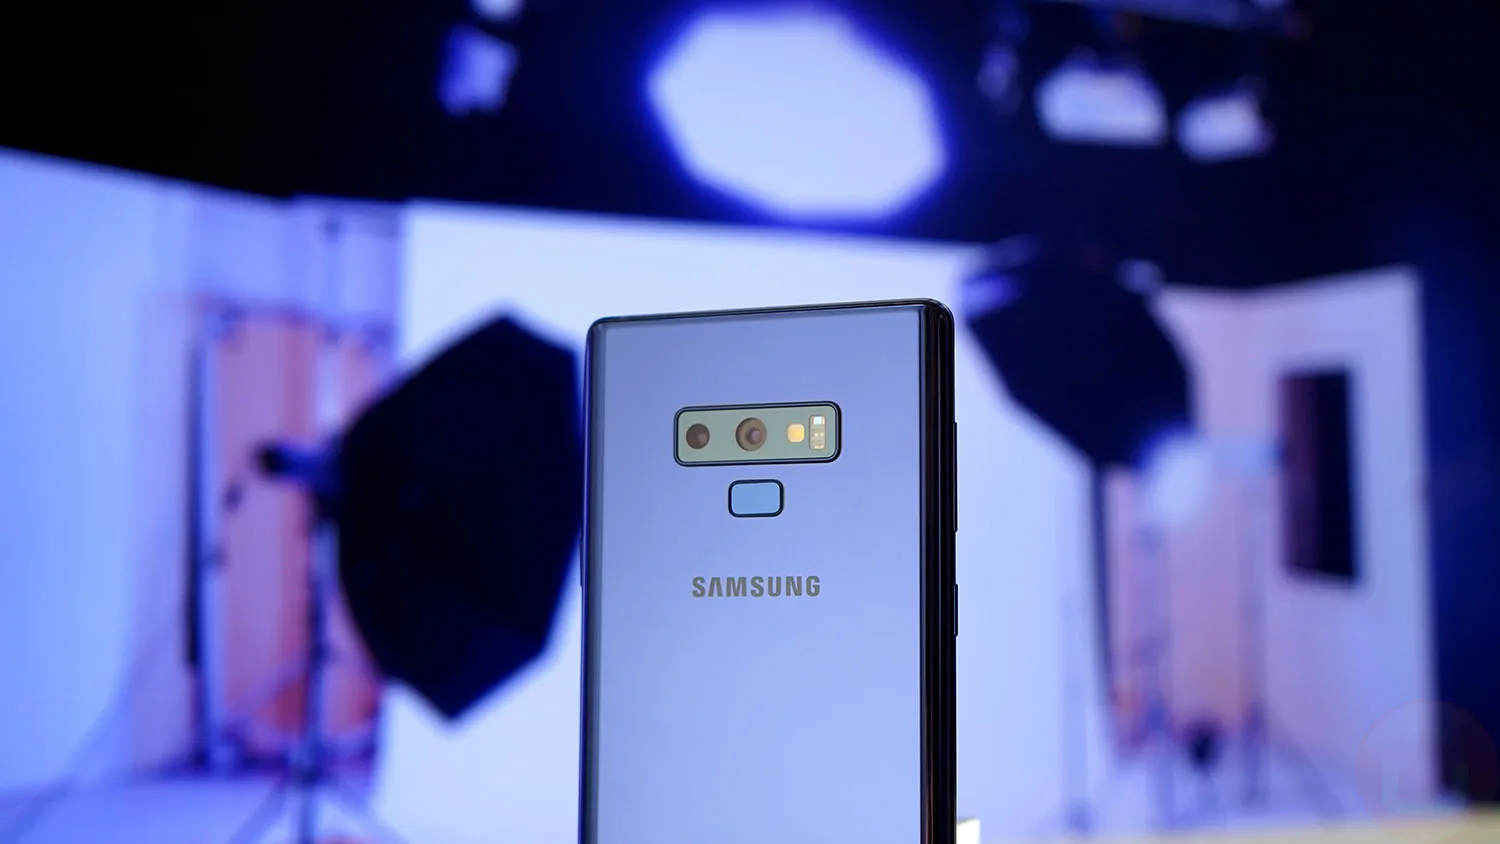 El antiquísimo buque insignia de Samsung recibe de repente una actualización a pesar de terminar su ciclo de vida en 2022